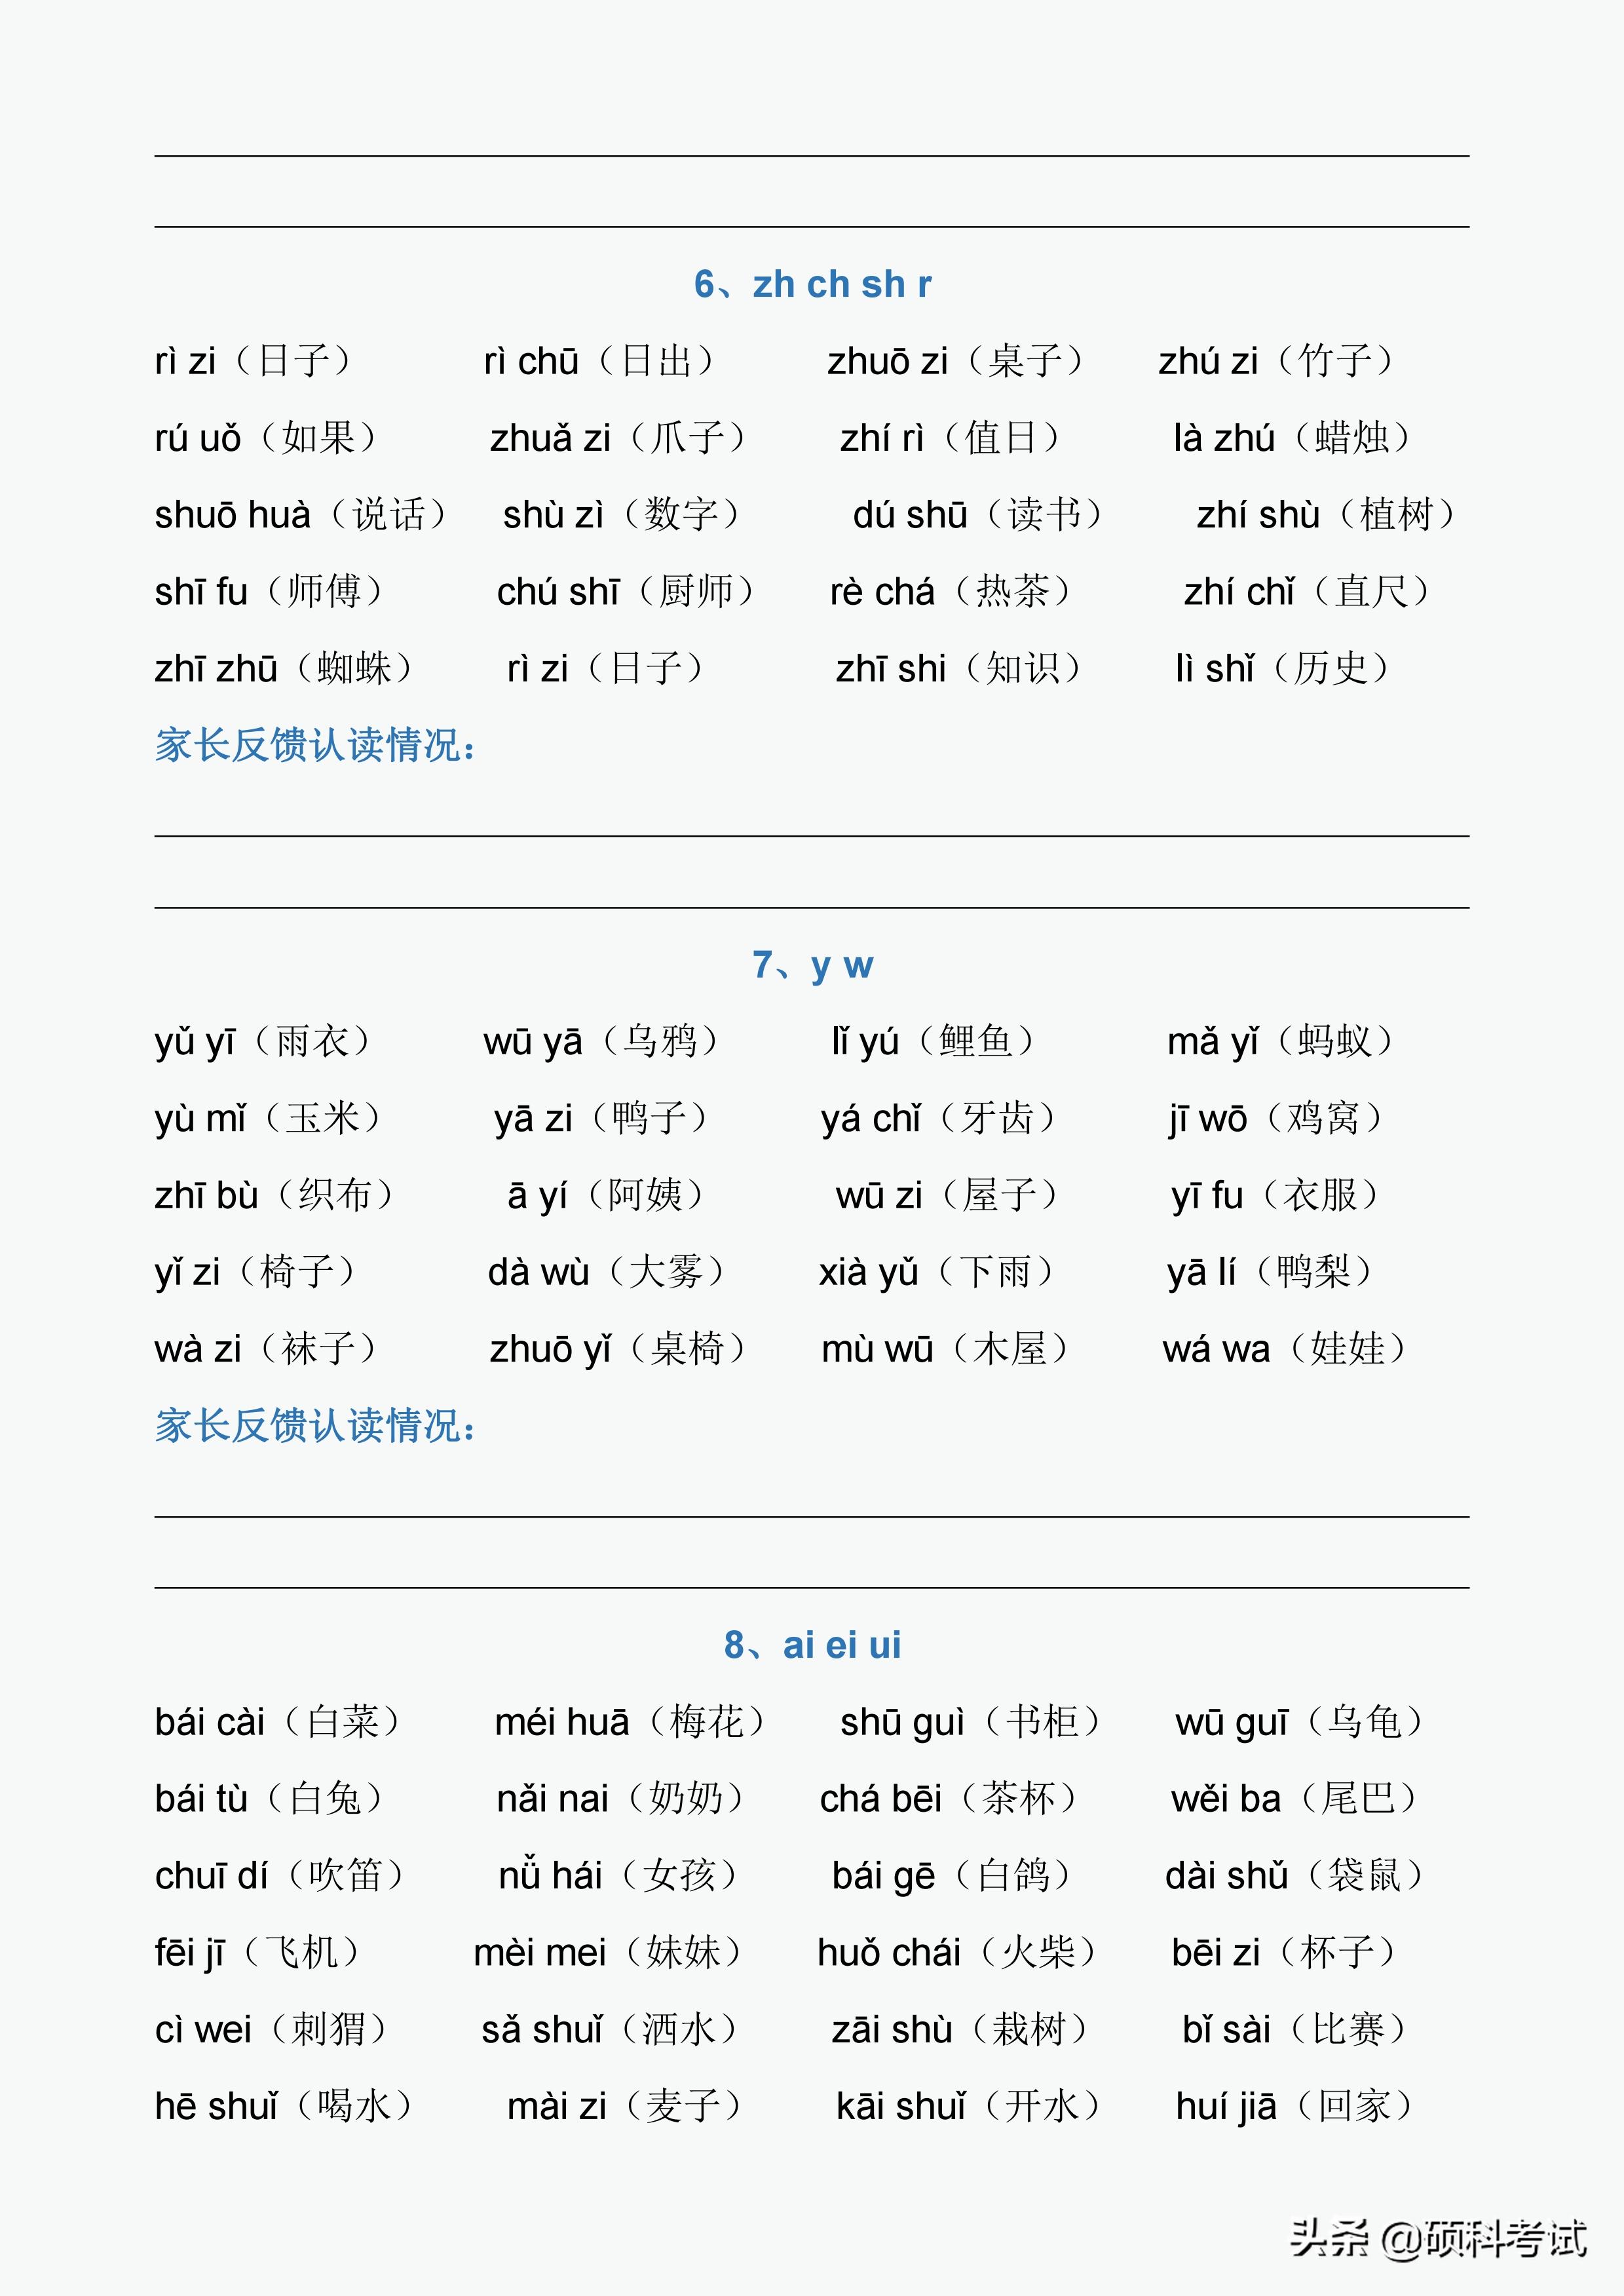 声母表和韵母表（一年级拼音字母表）